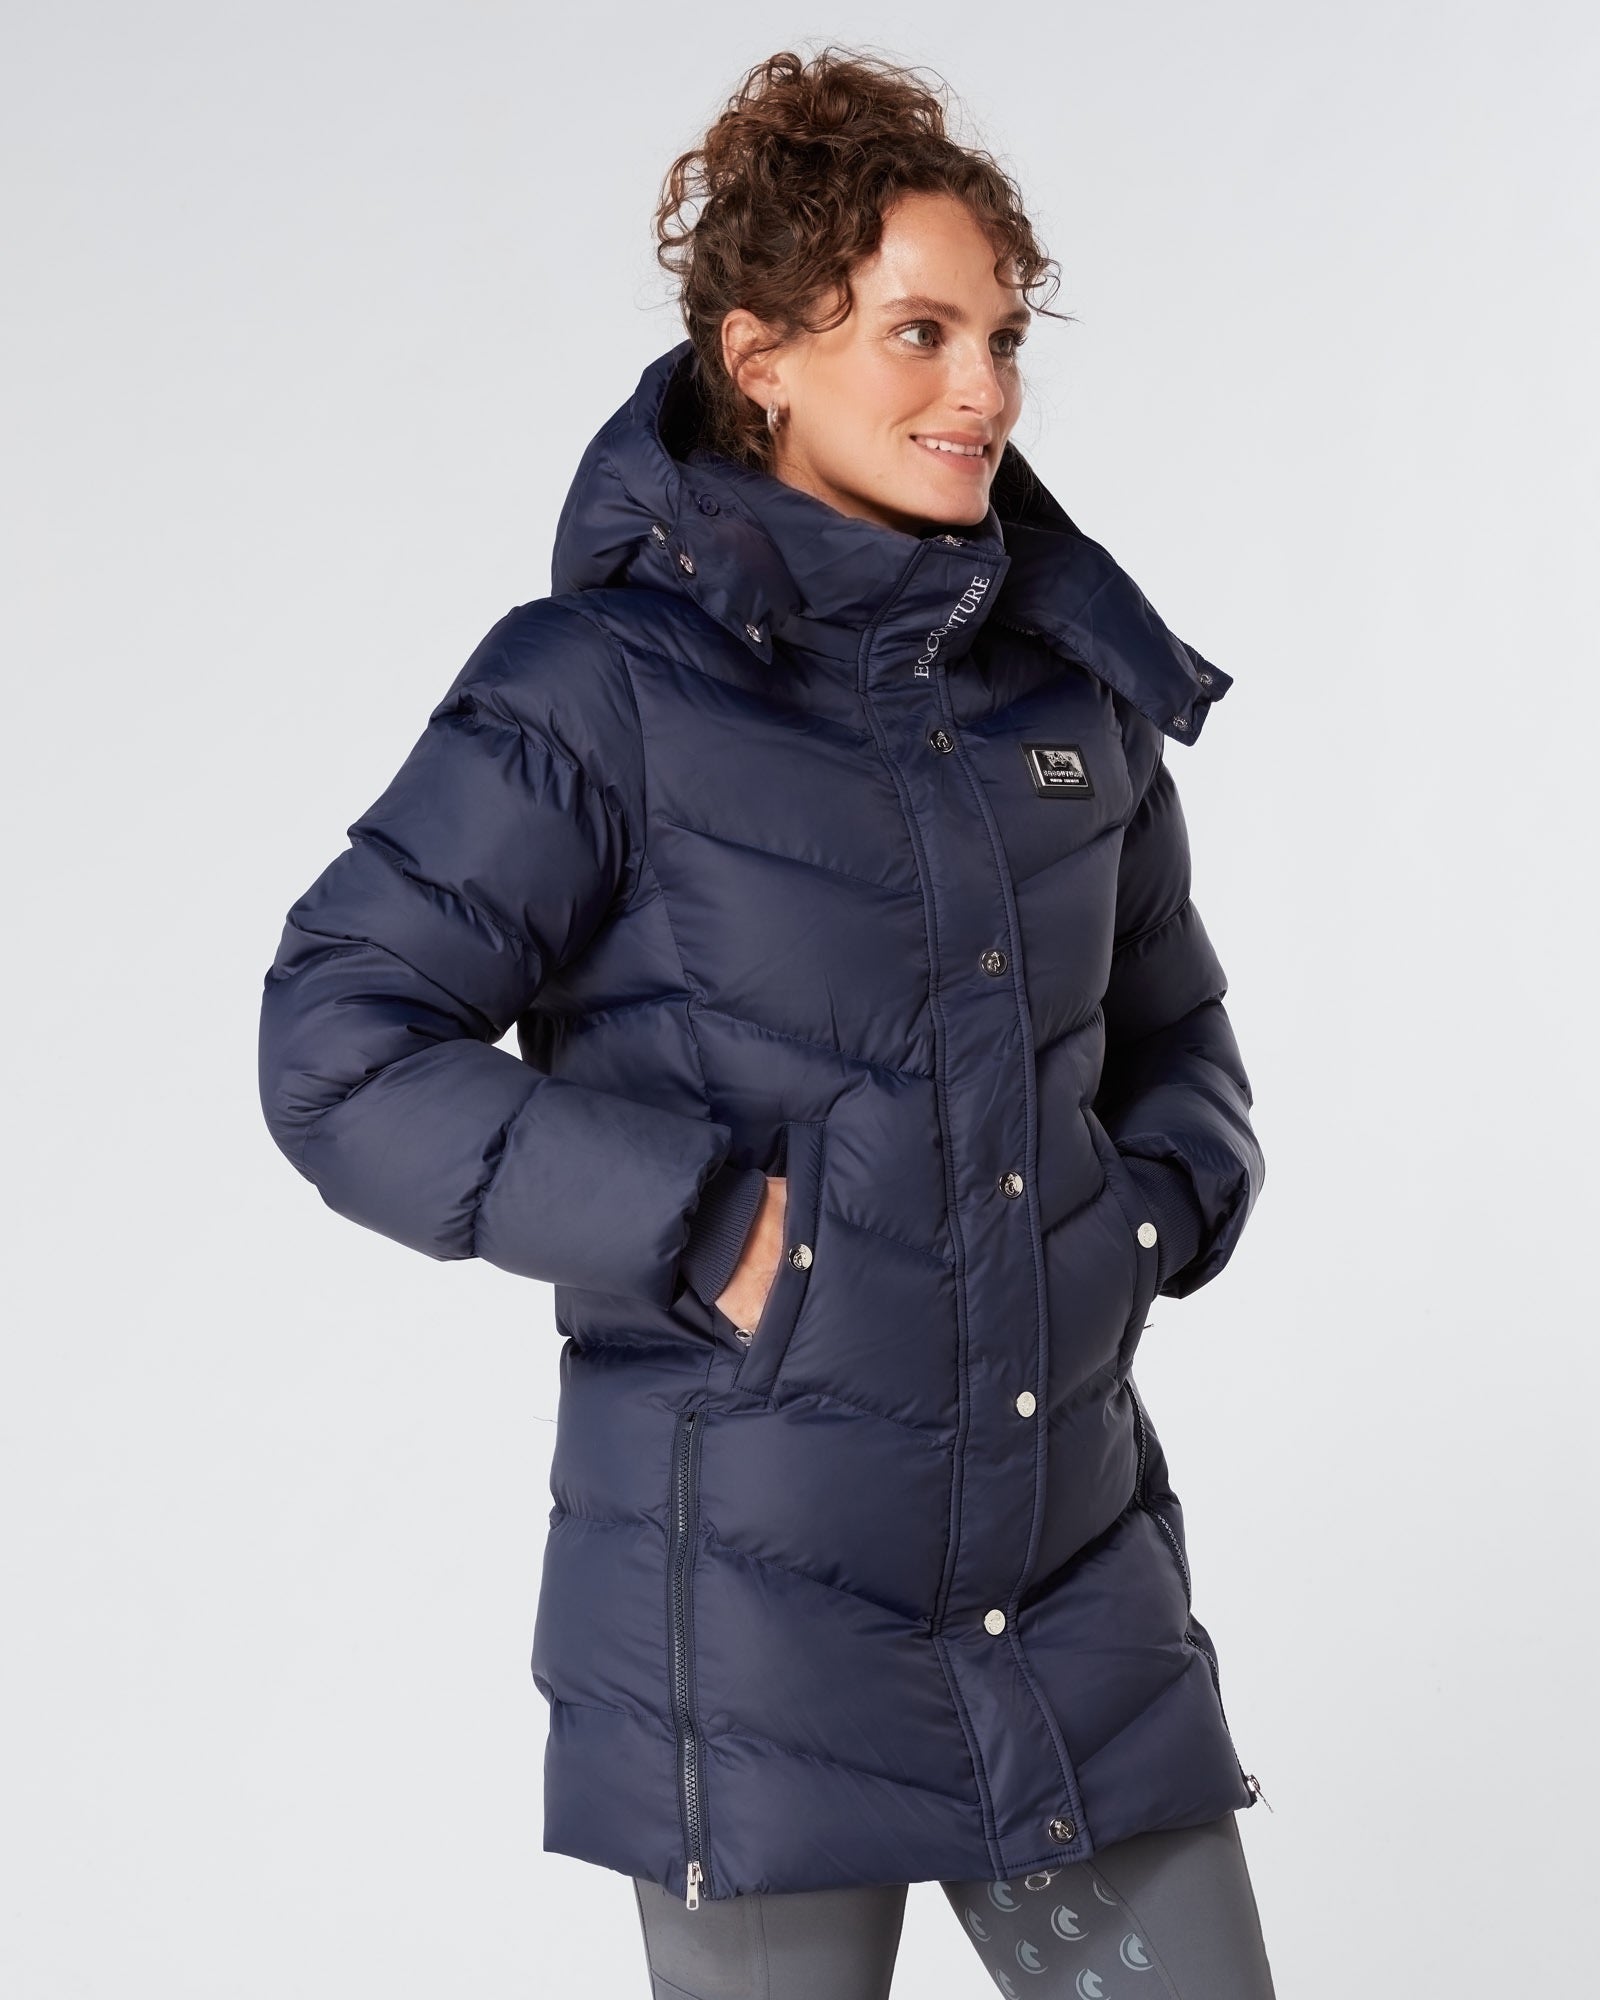 Exclusive Long Navy Puffer Coat / Jacket 3.0 - Detachable Fur & Hood